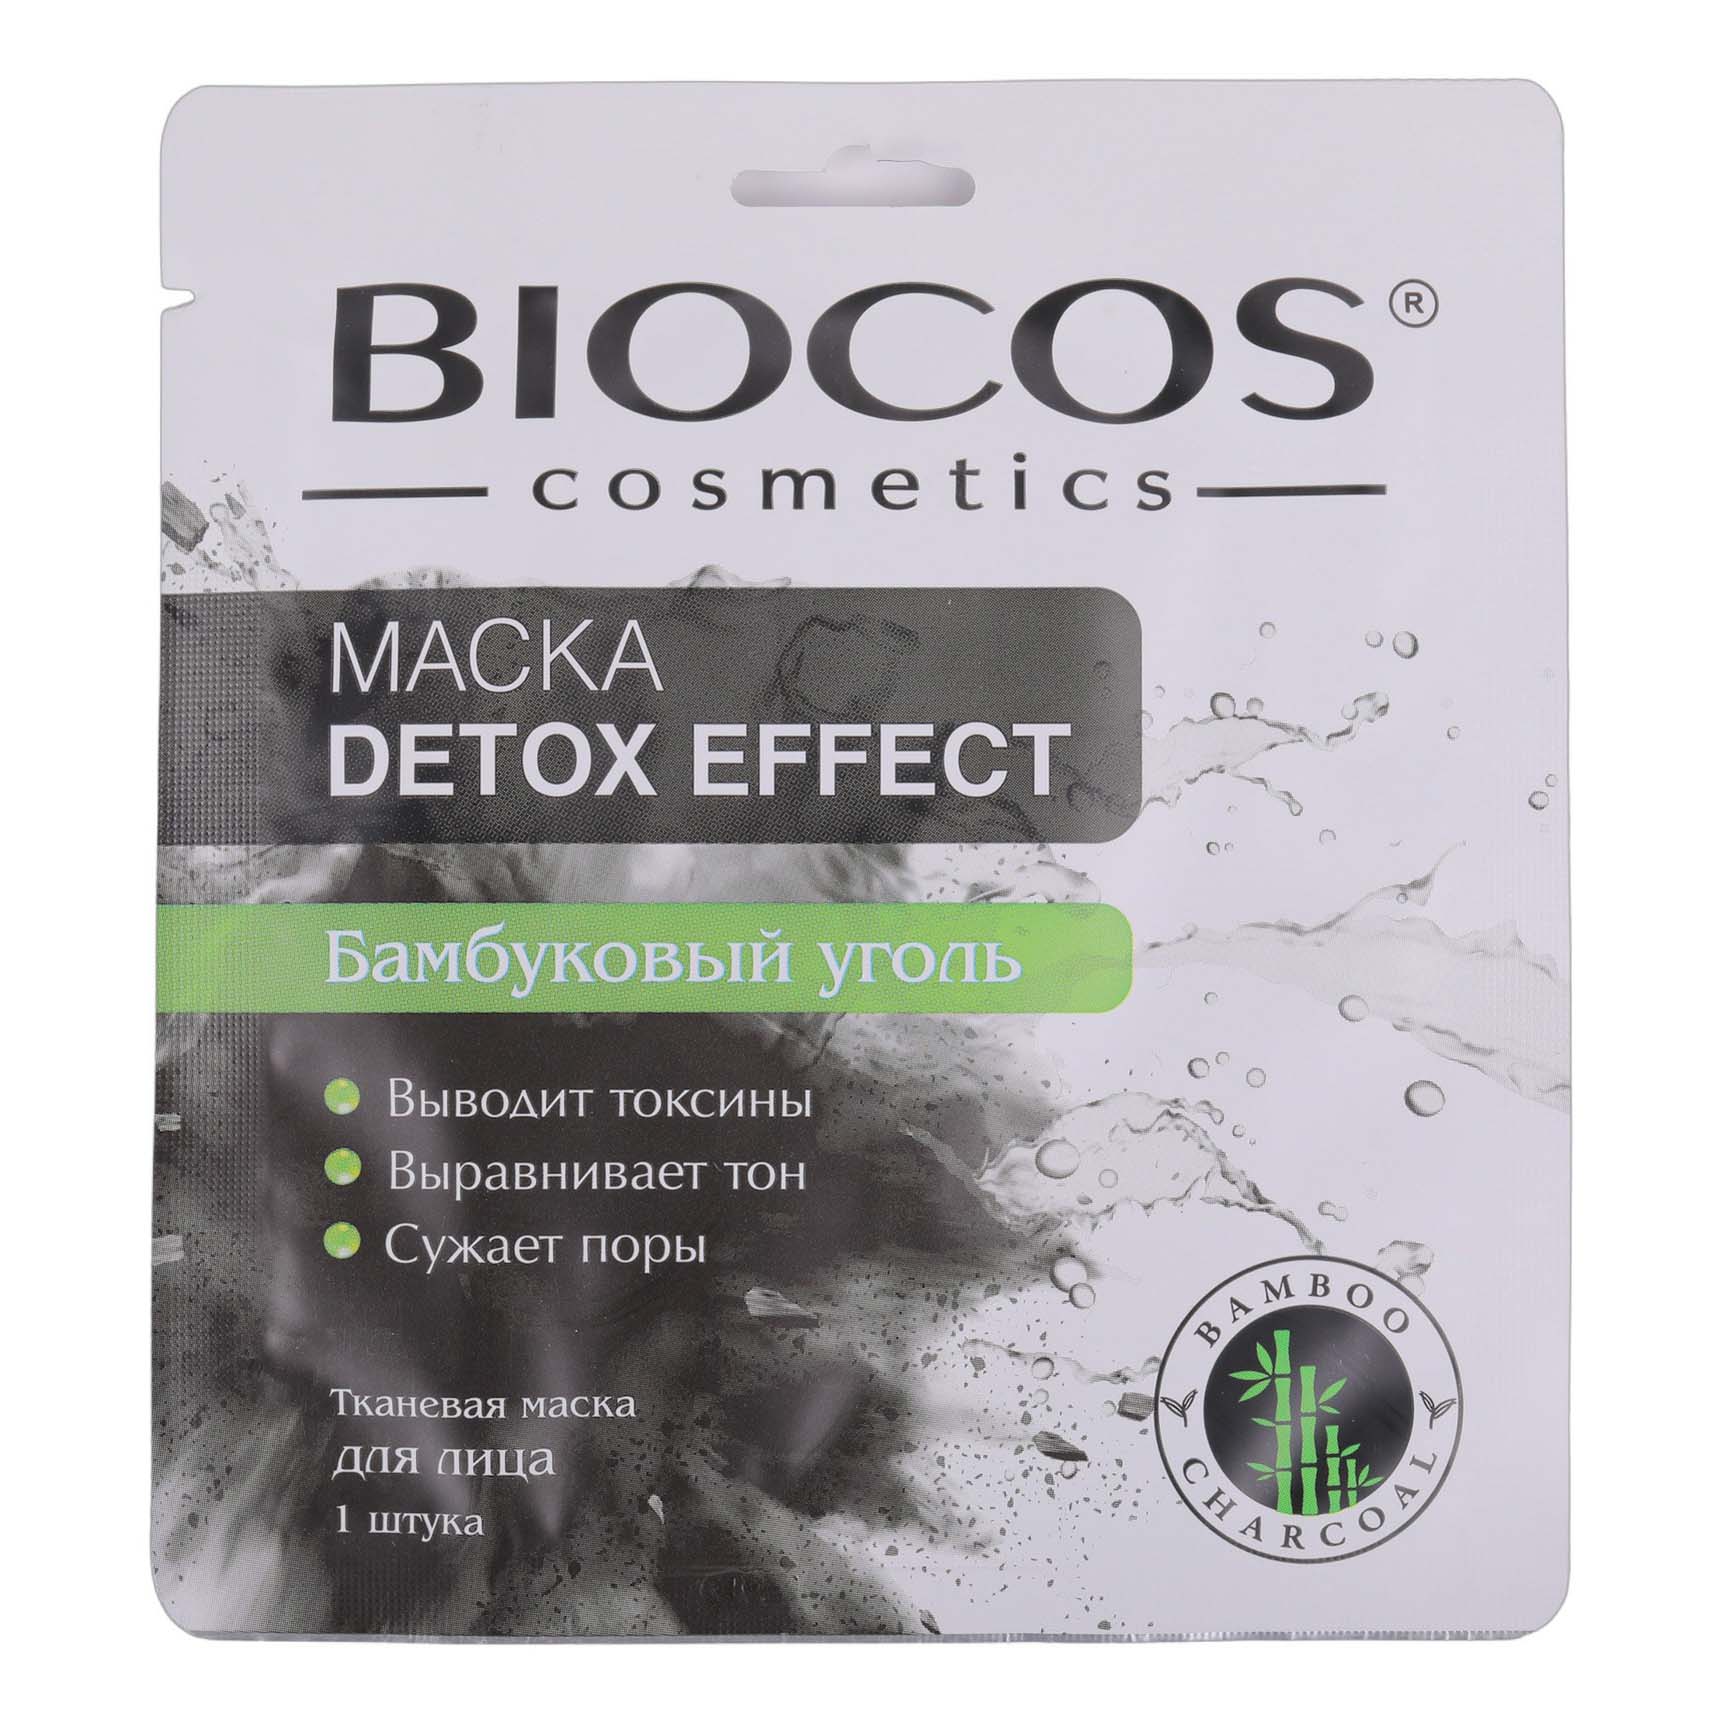 Маска тканевая для лица Biocos Detox Effect с бамбуковым углем 1 шт маска для лица garnier очищающий уголь листья черного чая тканевая